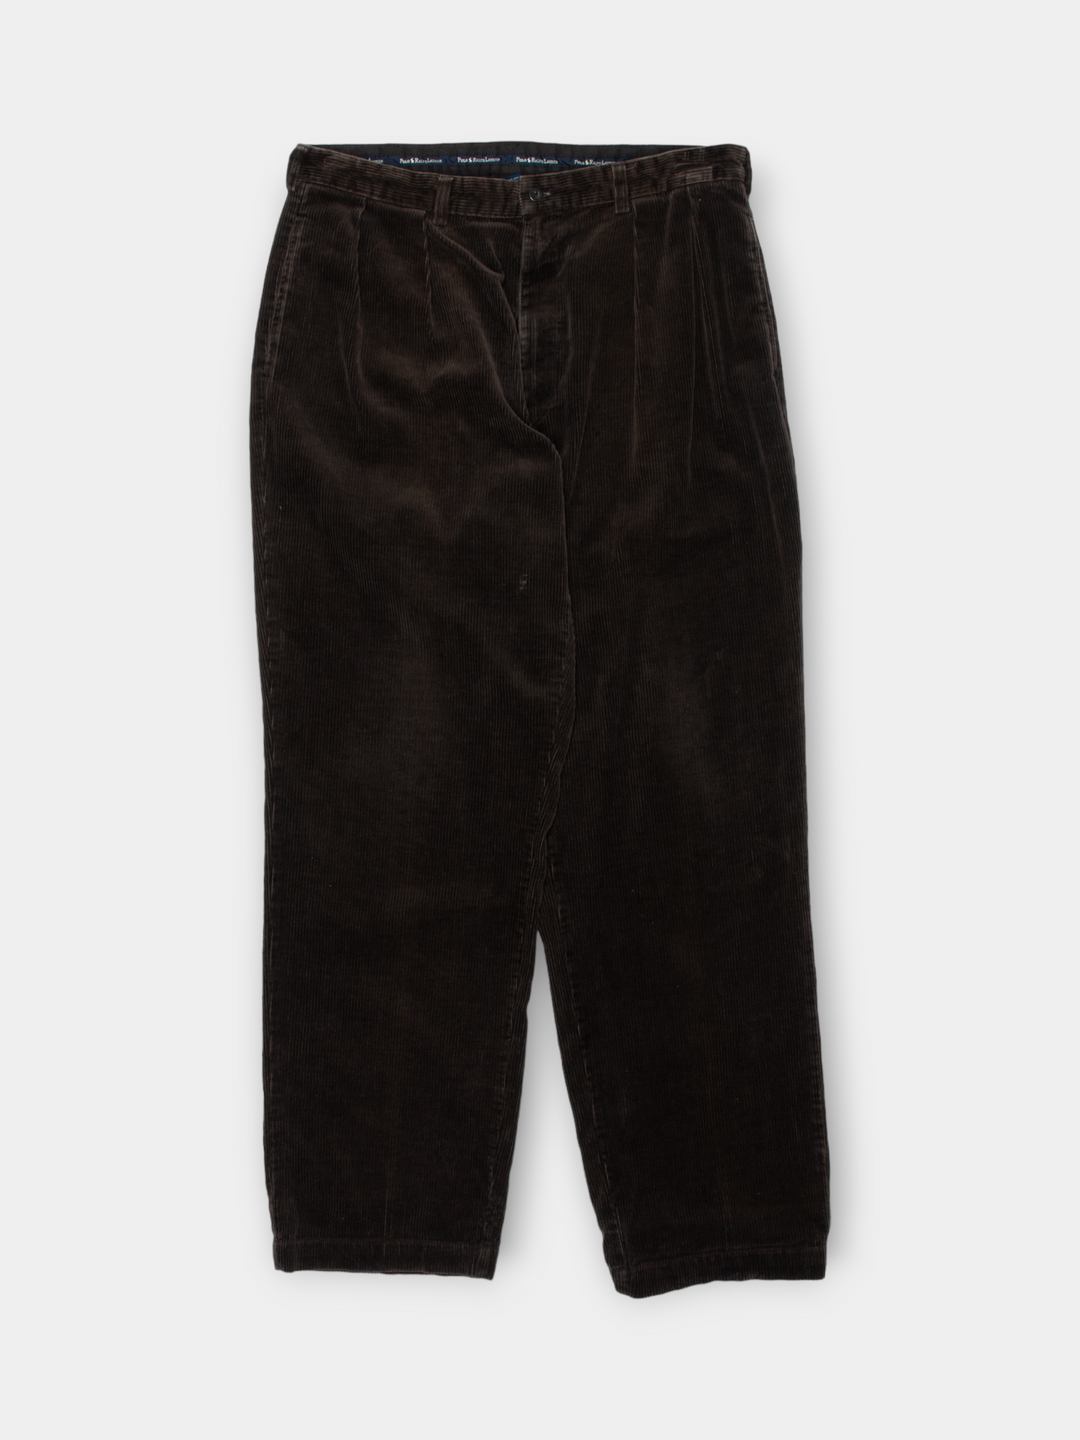 90s Ralph Lauren Corduroy Pants (36")